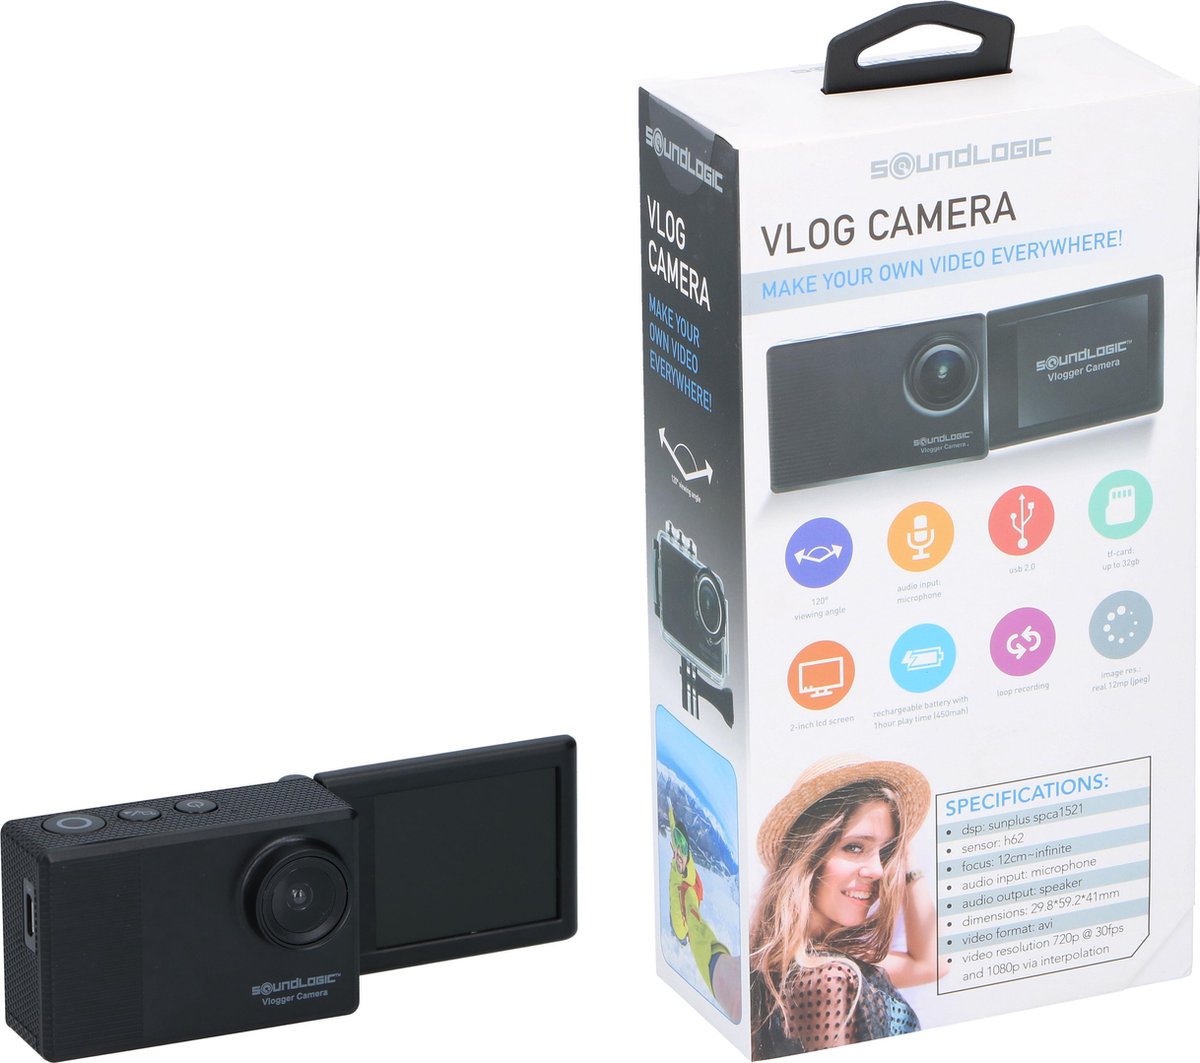 Soundlogic Vlog Camera - Vlogger - Trendy Gadget - Selfie Cam